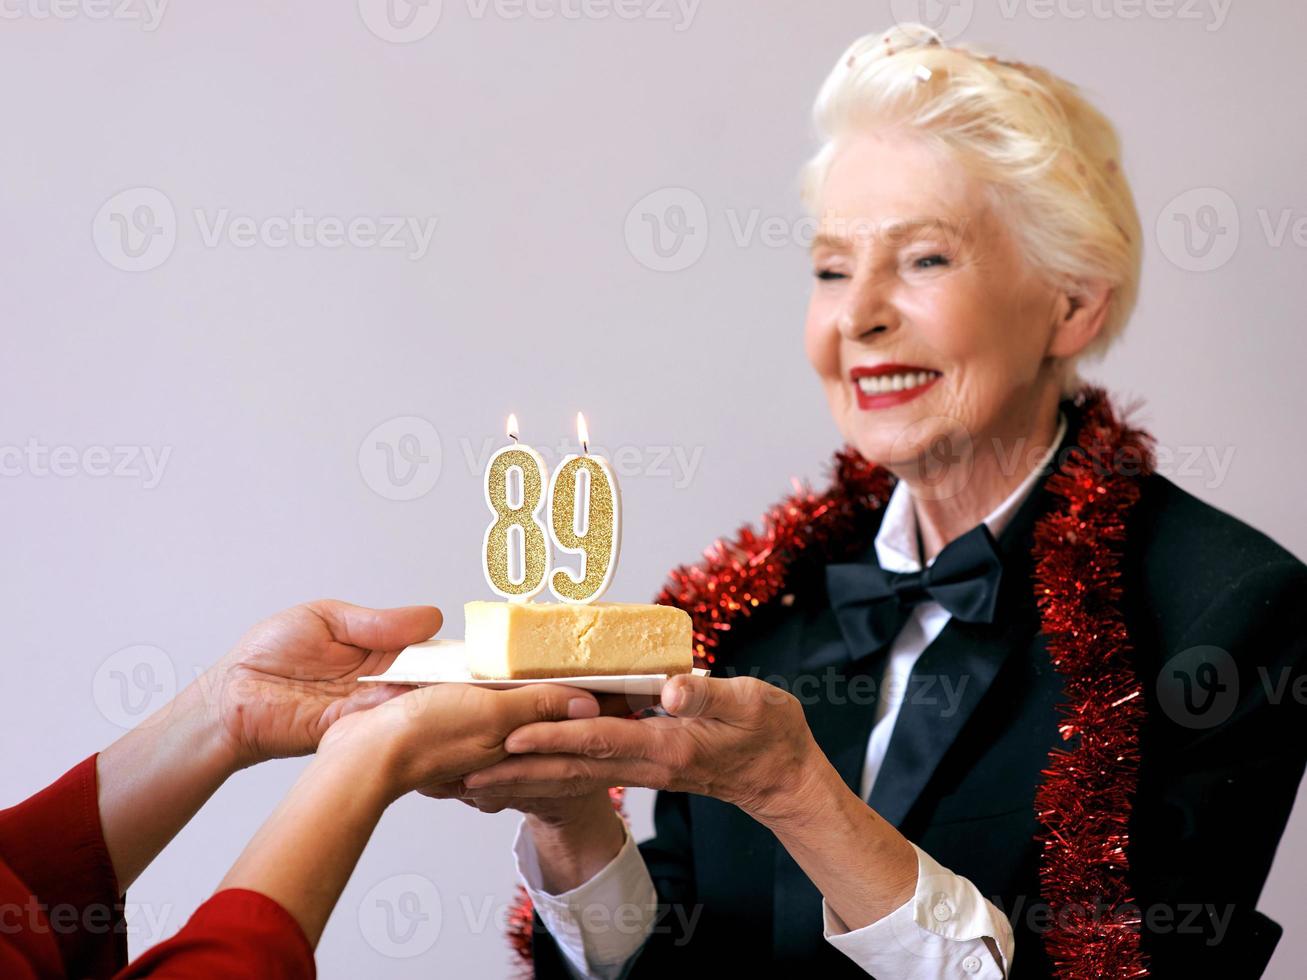 Fröhliche, stilvolle, neunundachtzig Jahre alte Frau im schwarzen Anzug, die ihren Geburtstag mit Kuchen feiert. Lifestyle, Positiv, Mode, Stilkonzept foto